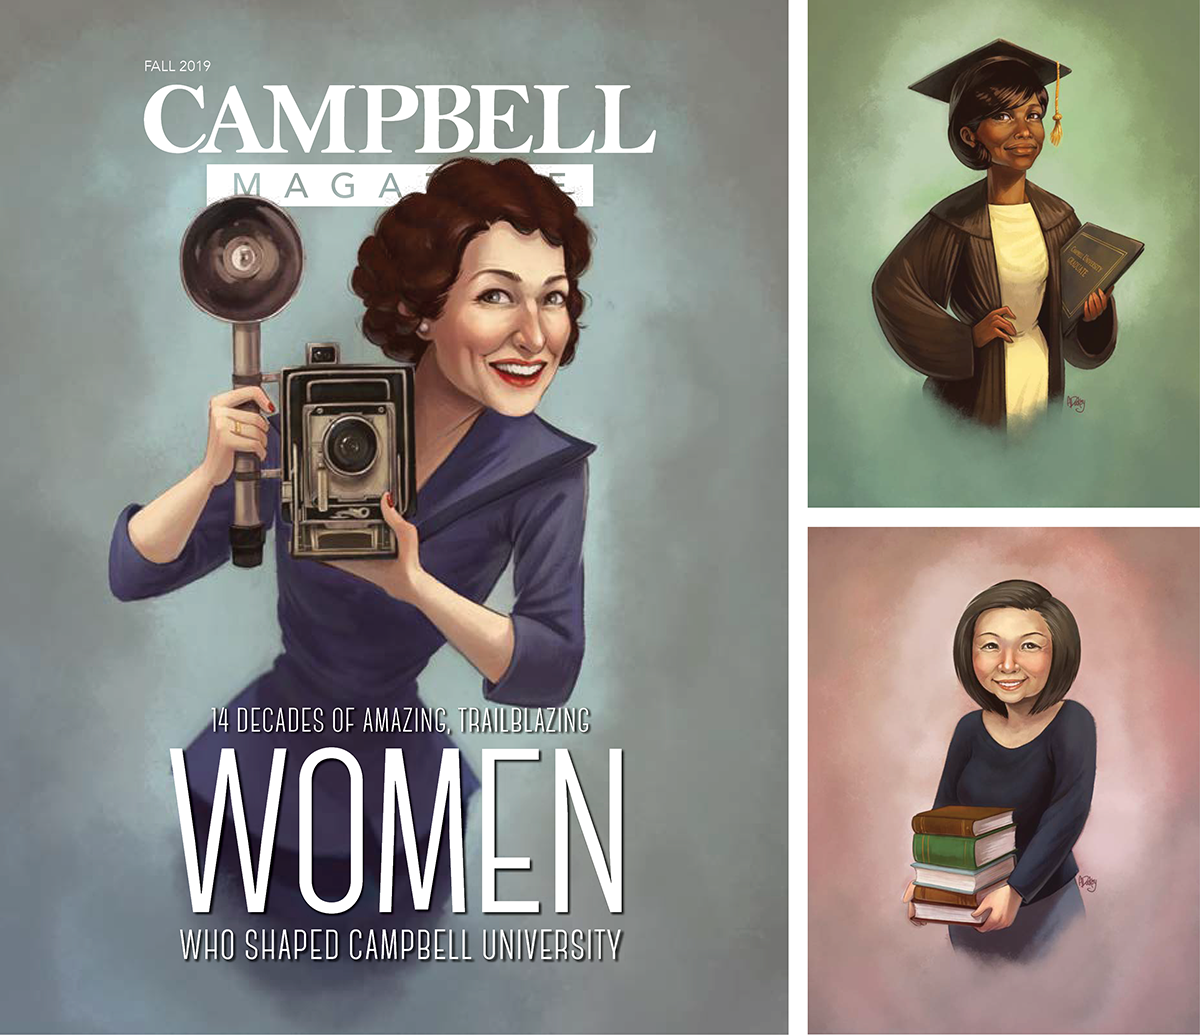 Campbell University Magazine celebrates 132 years